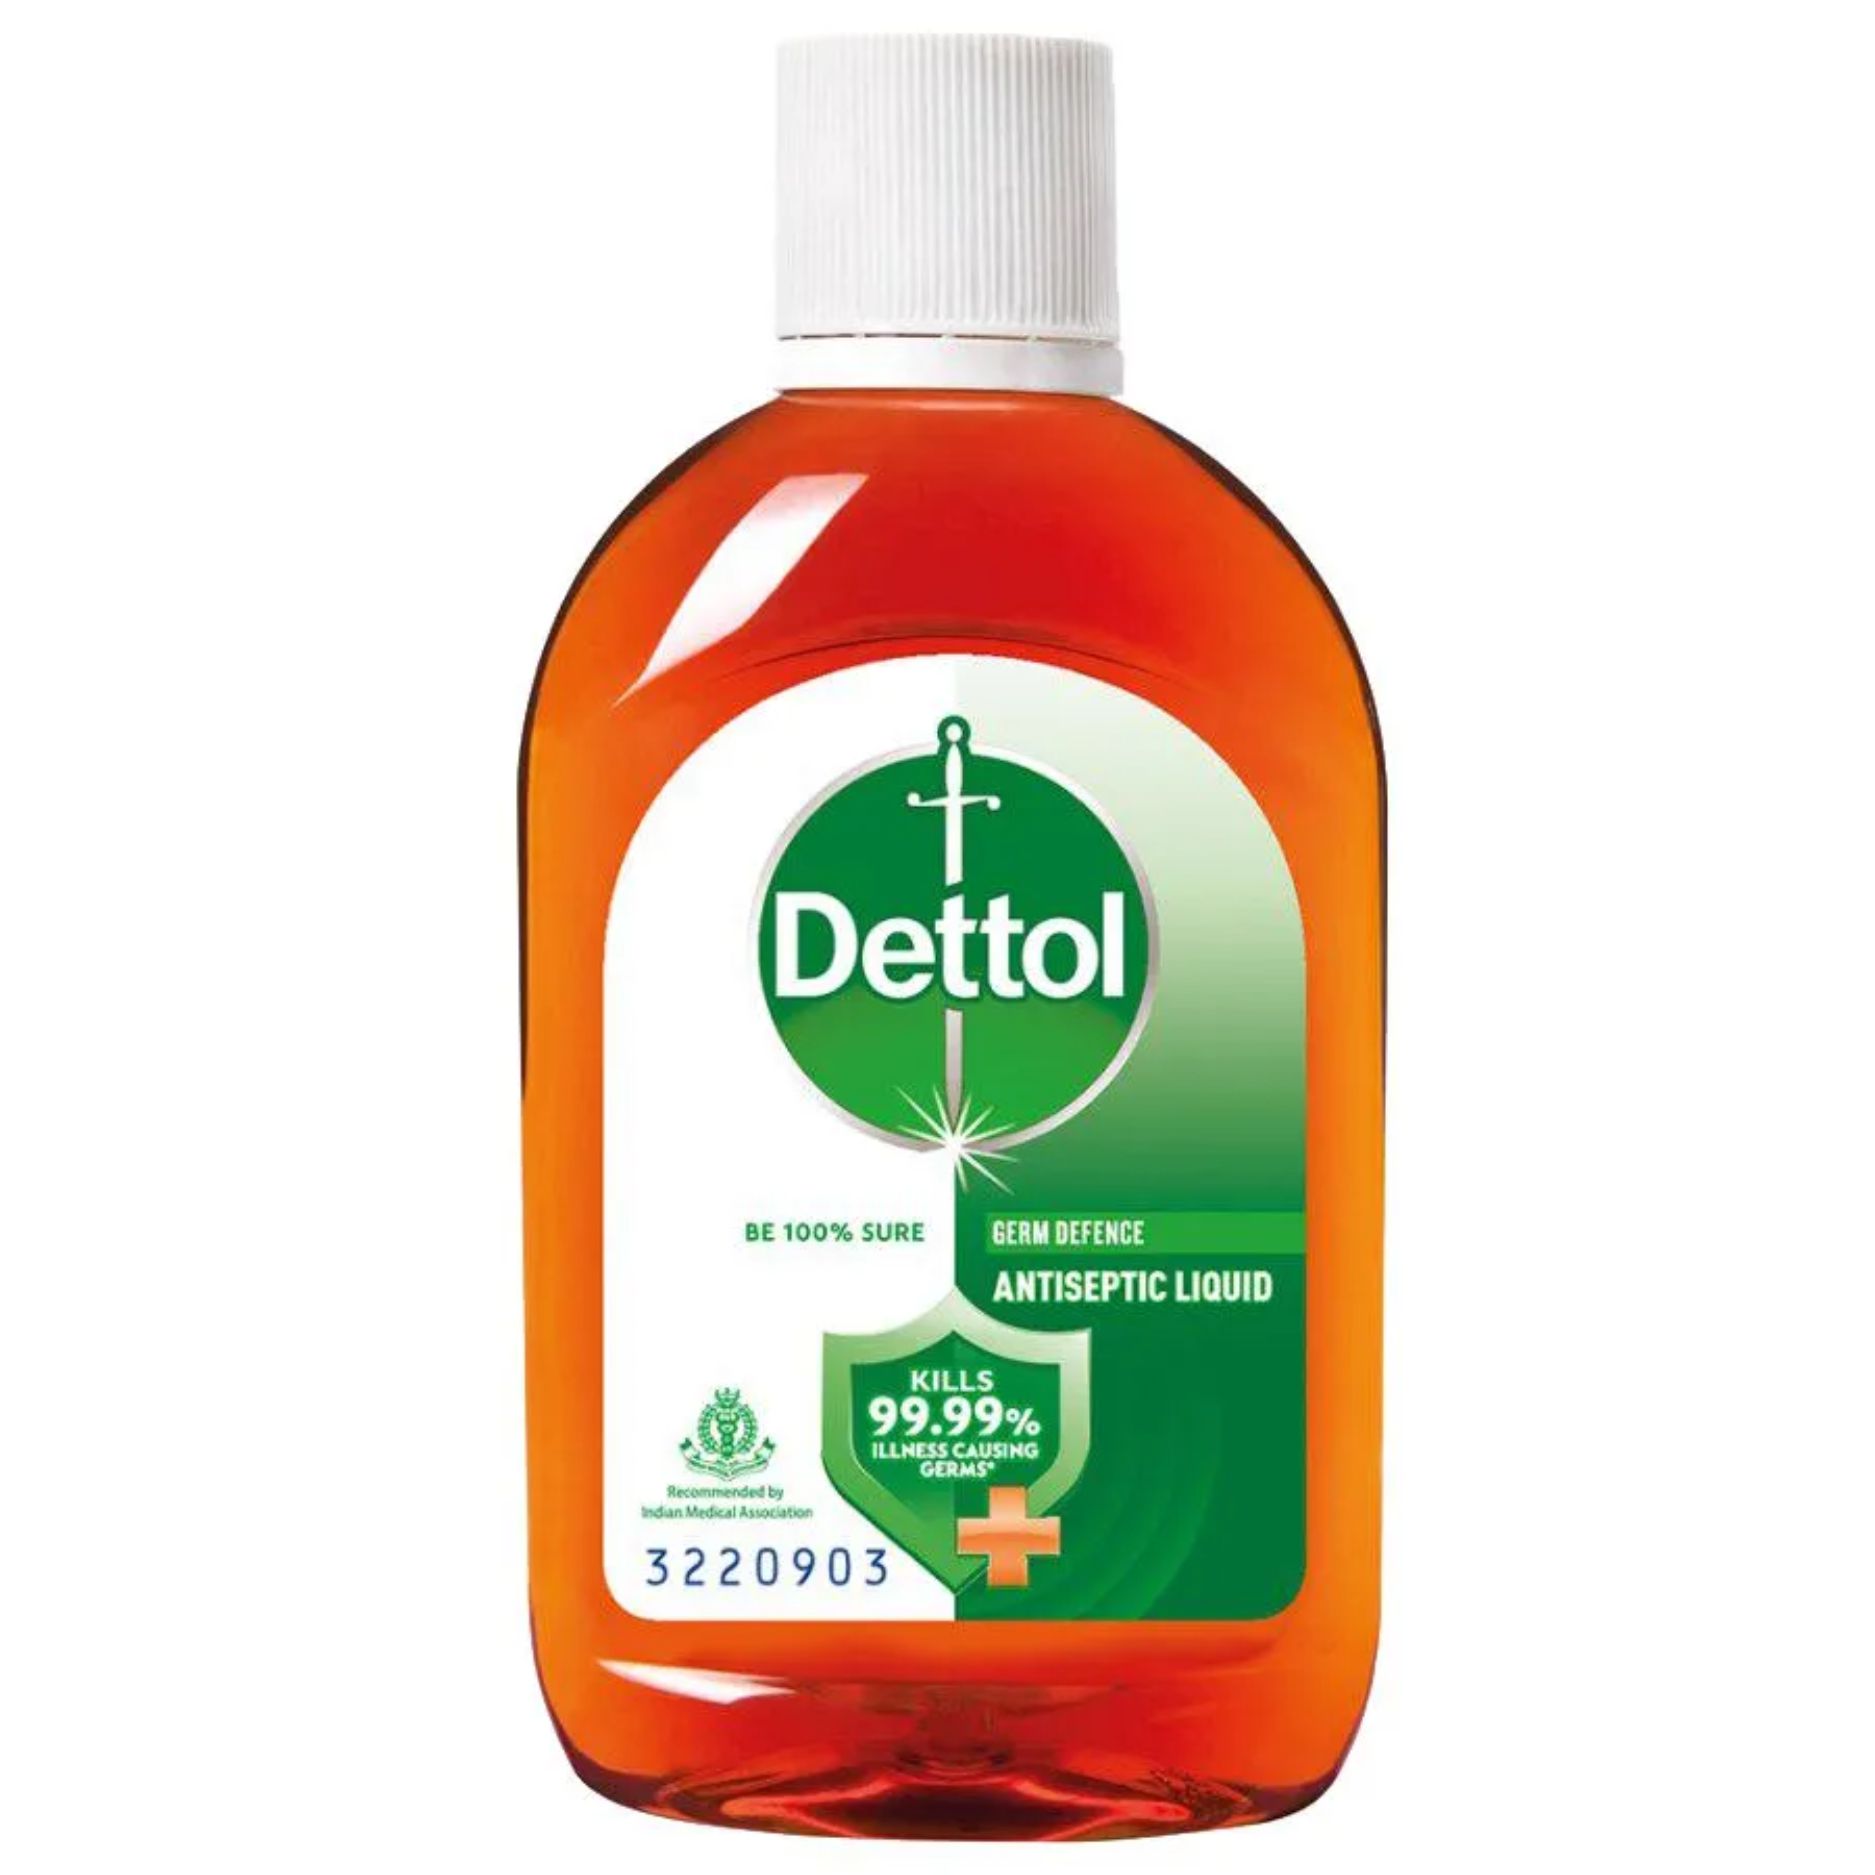 Dettol Antiseptic Disinfectant Liquid, 60 ml Bottle